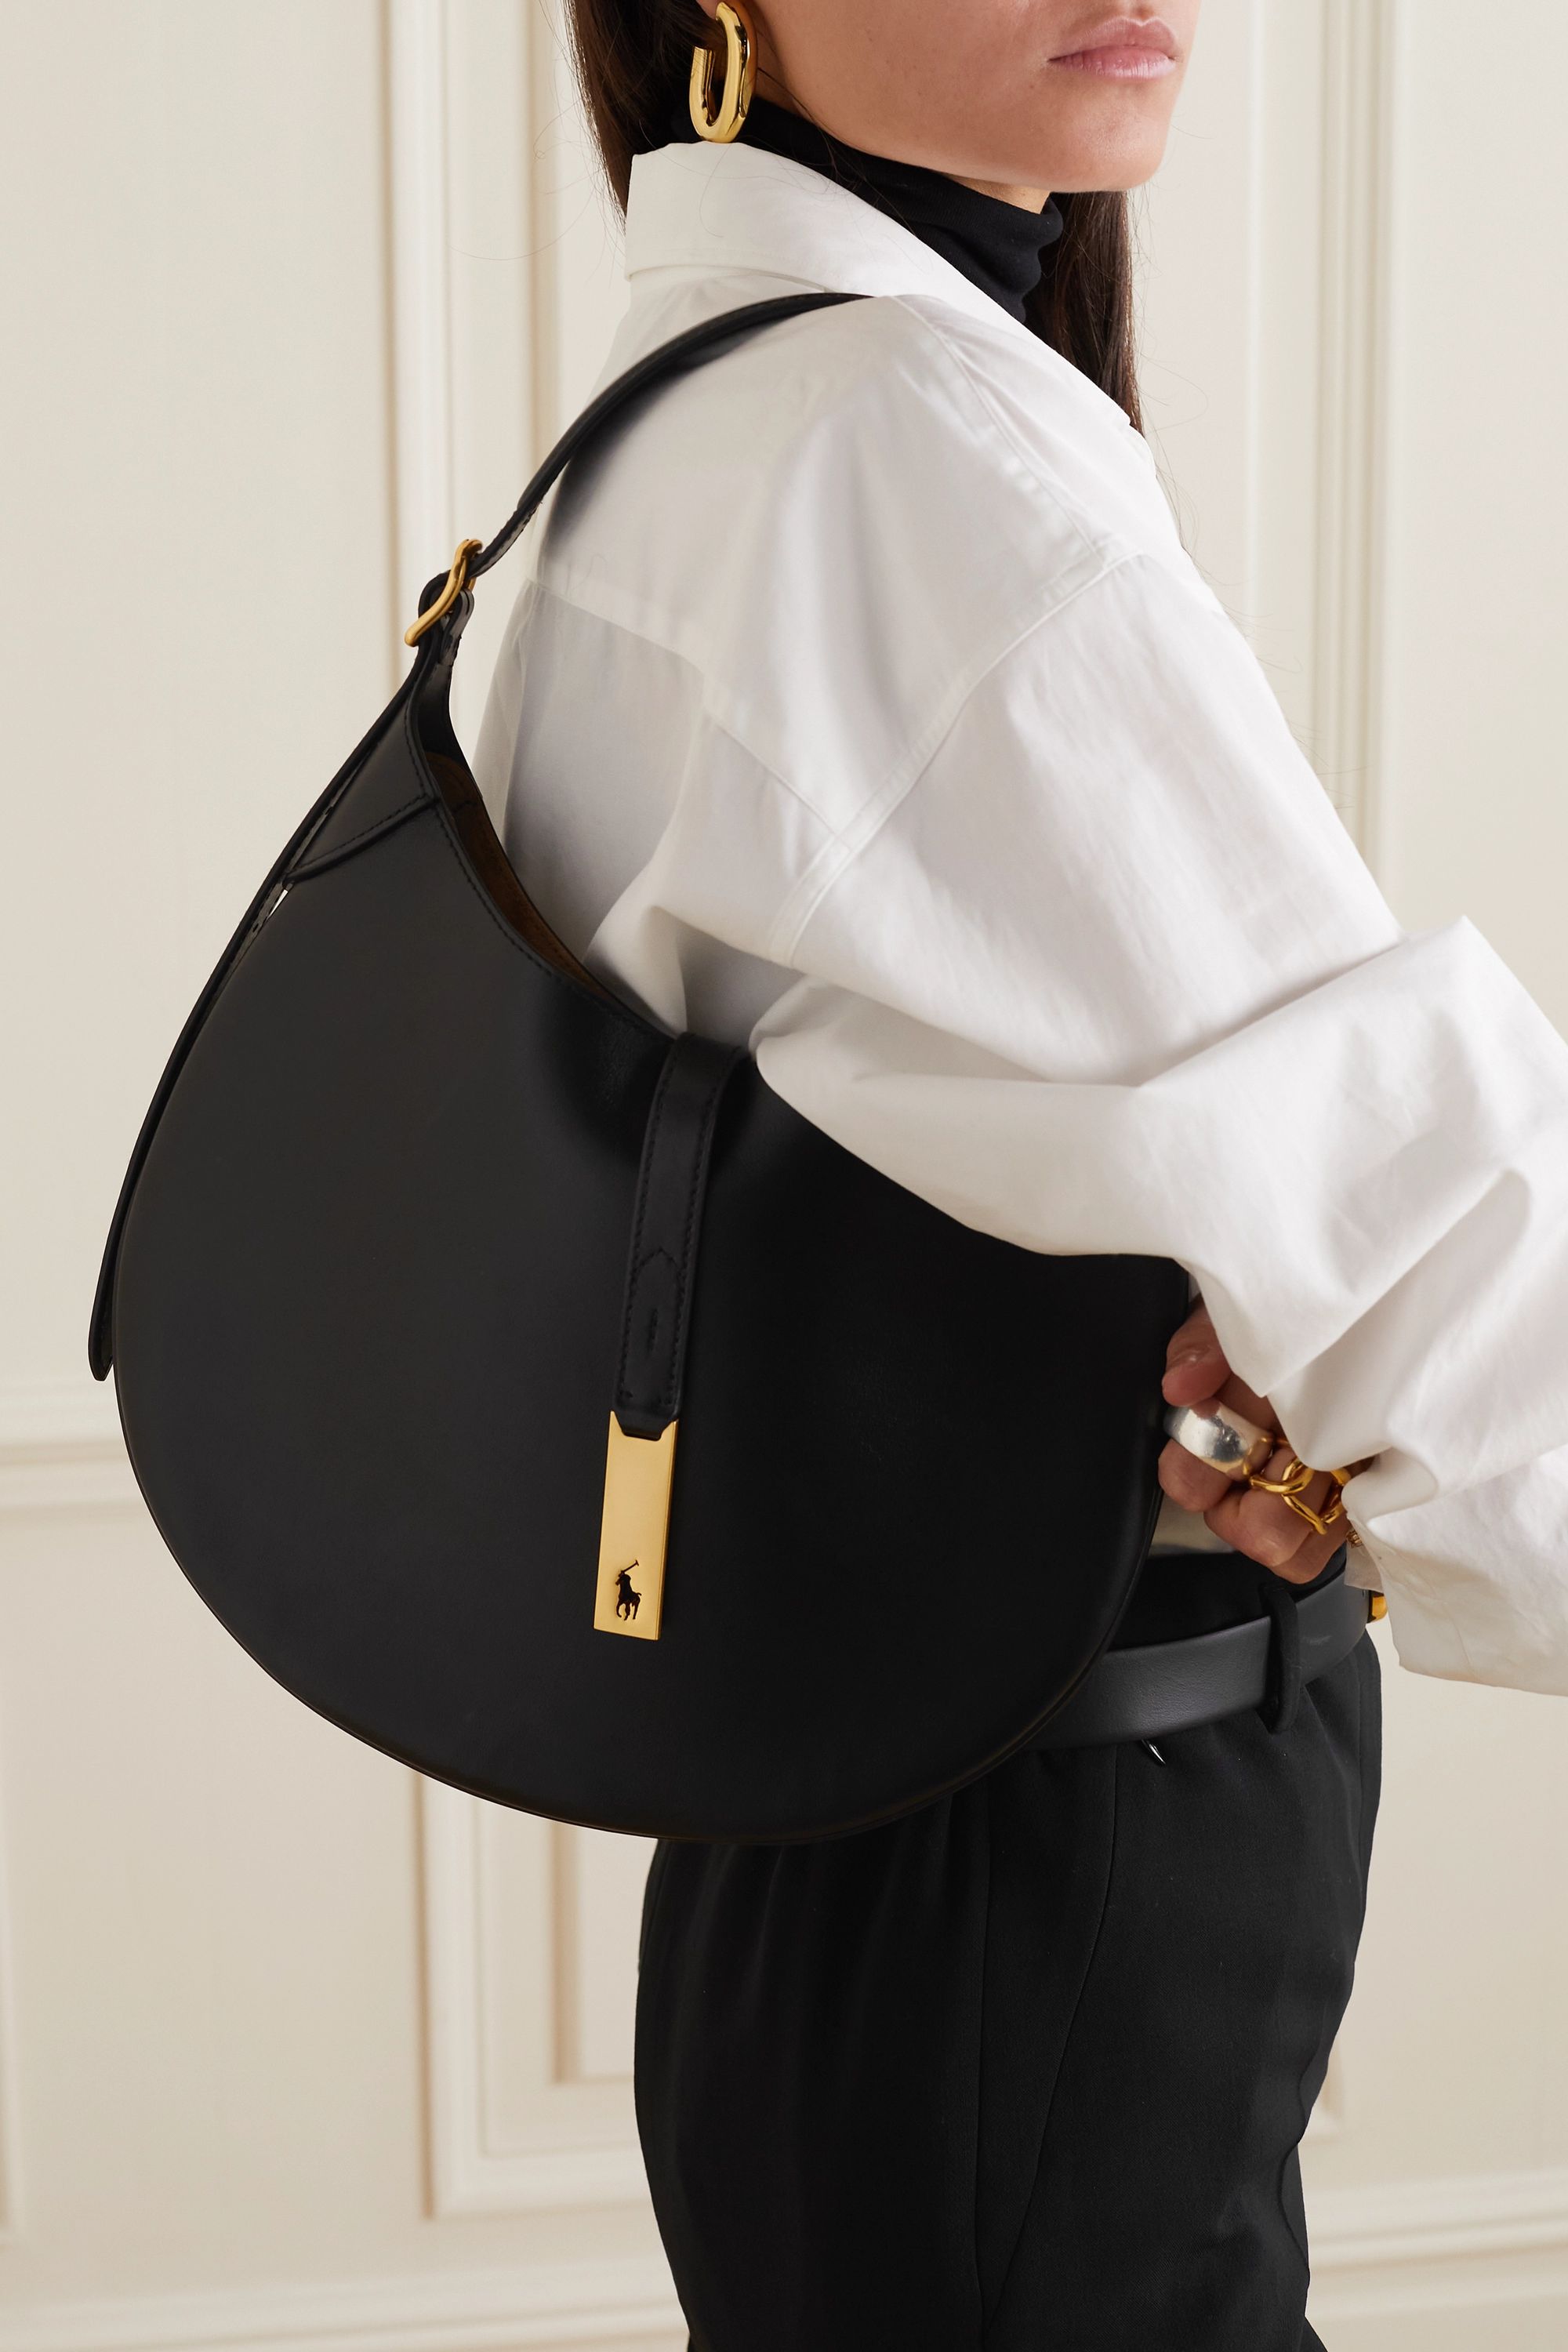 10 Best Designer Handbags under $1,000 • Petite in Paris